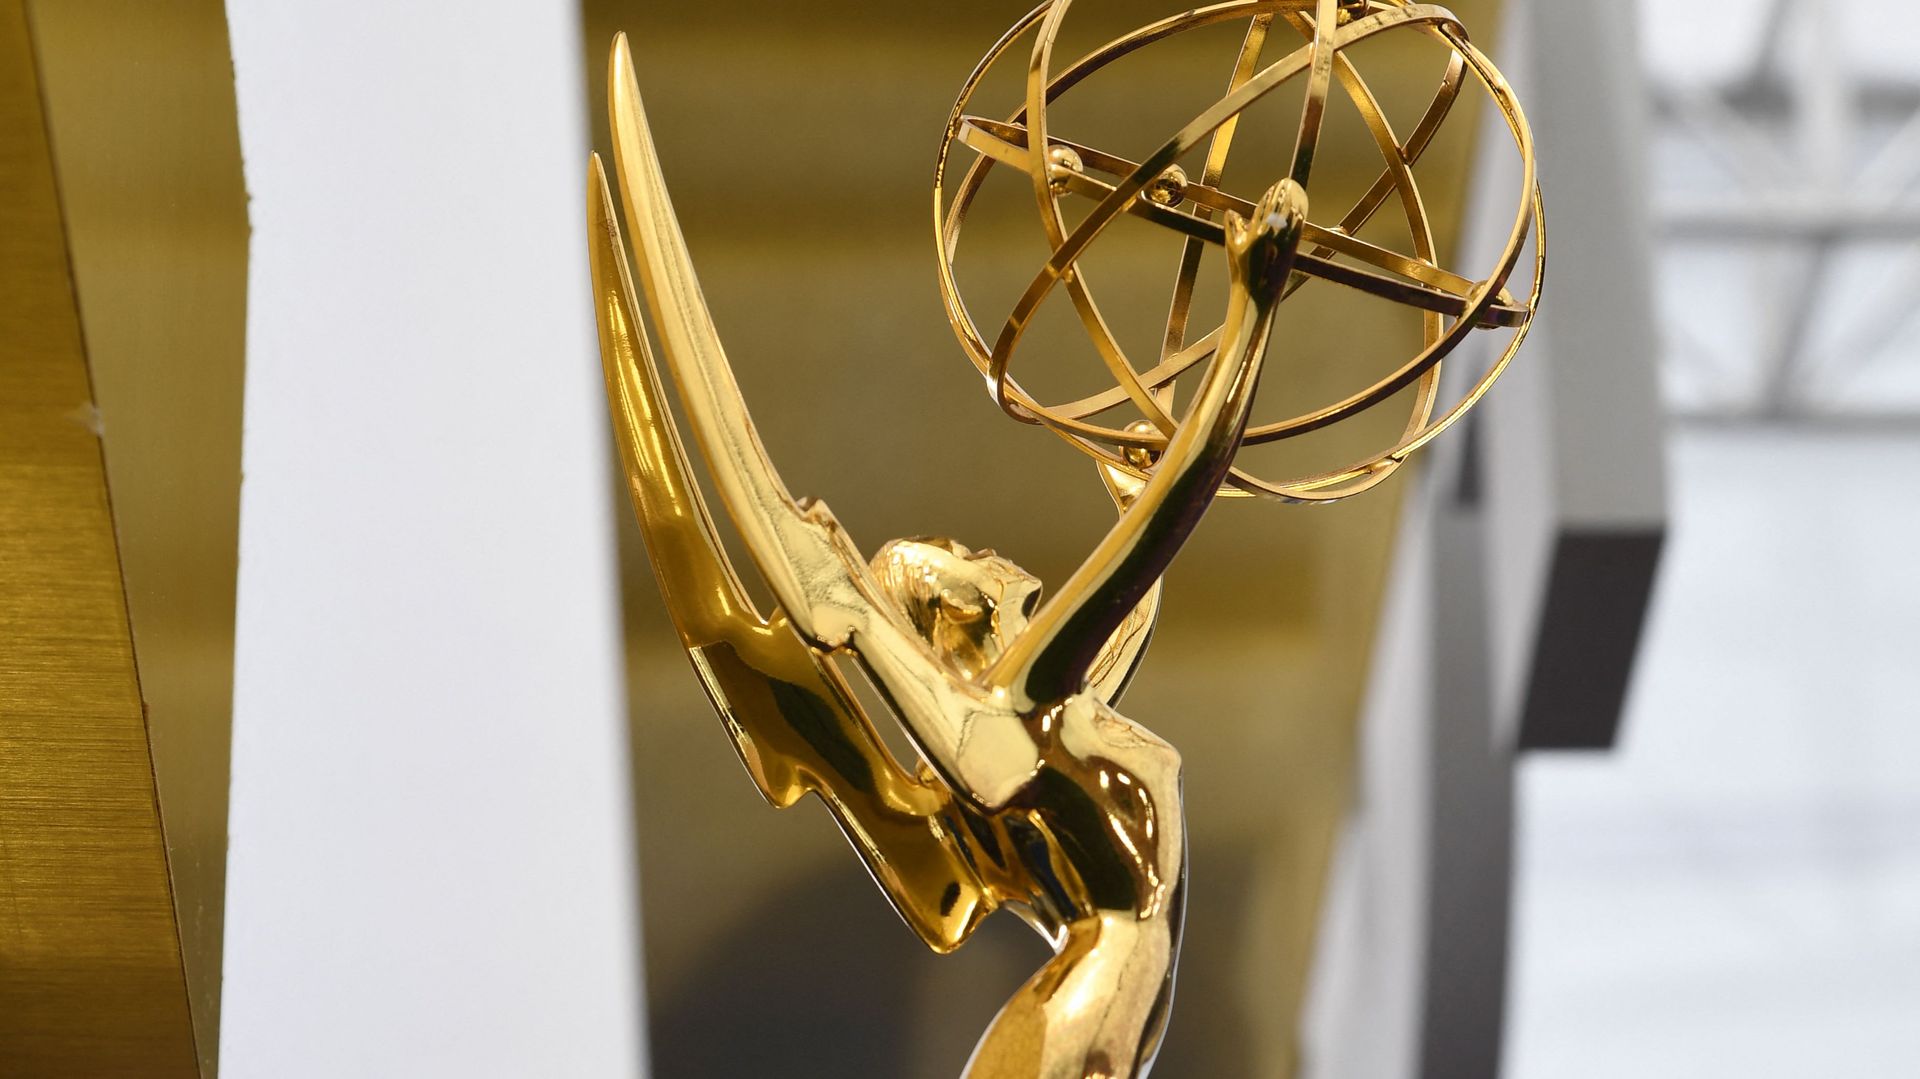 Pour leur 73e édition, les Emmy Awards ont fait mardi un pas de plus vers la diversité.